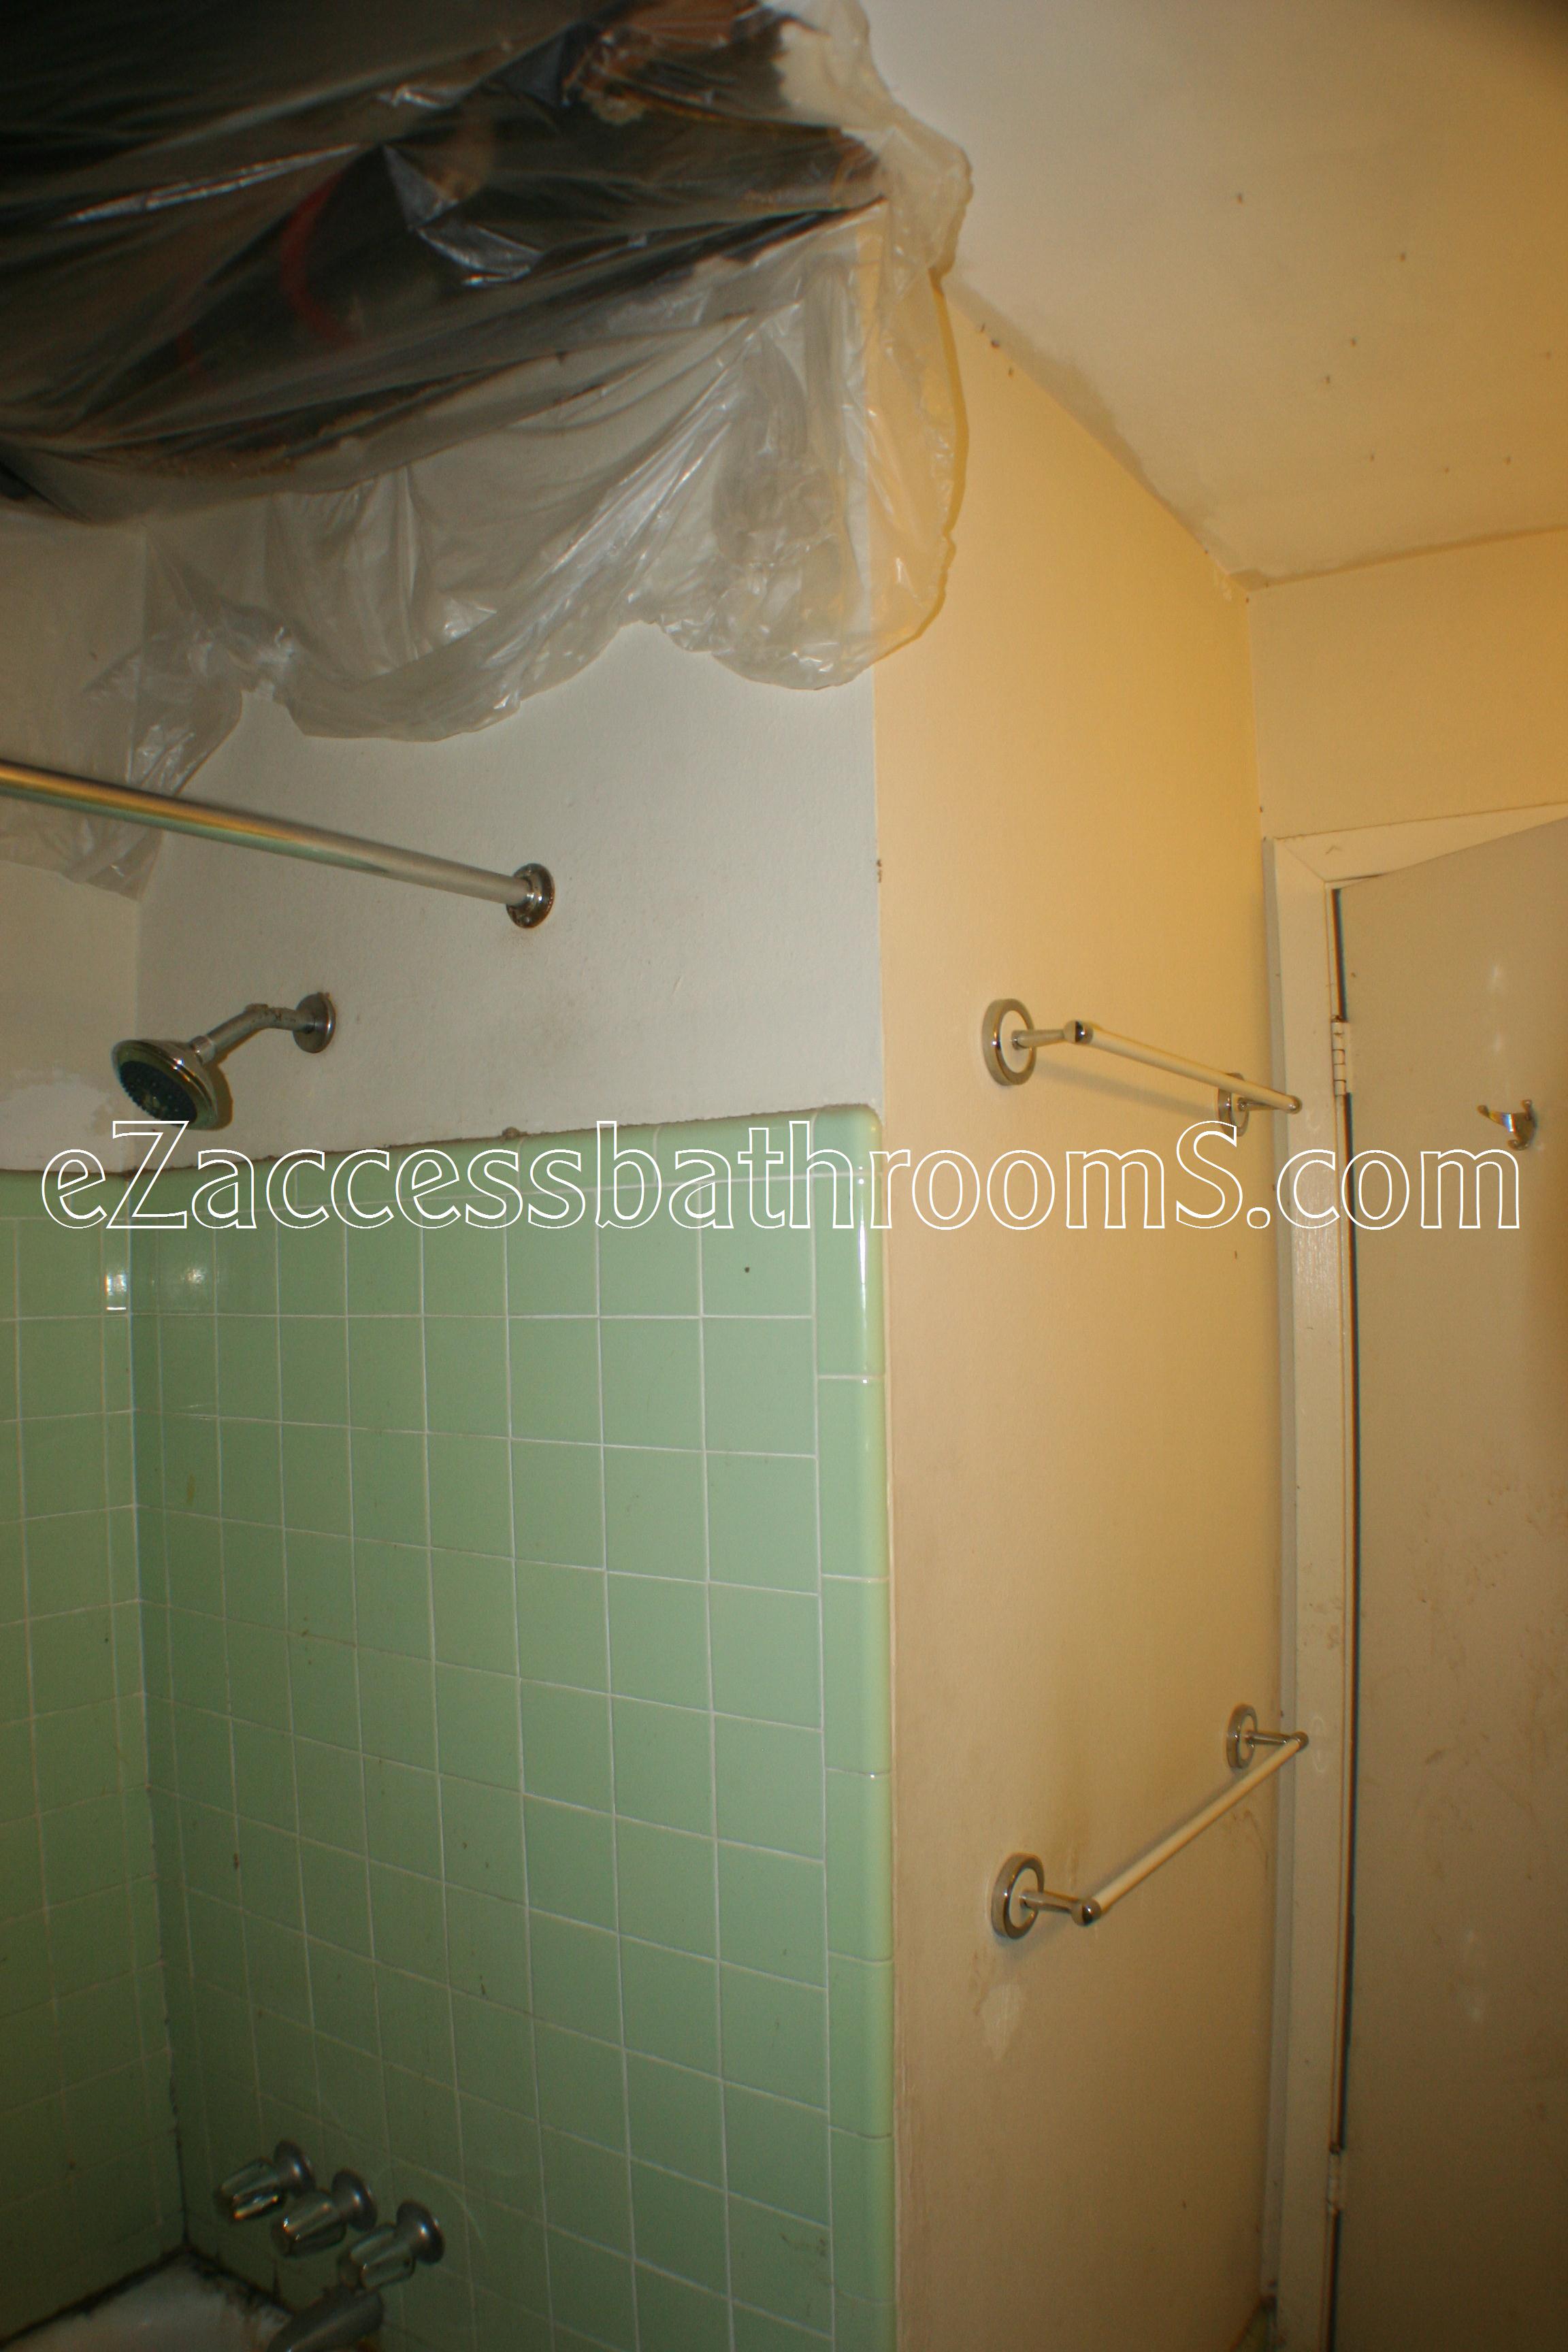 rollin shower ezaccessbathrooms.com 0019.JPG